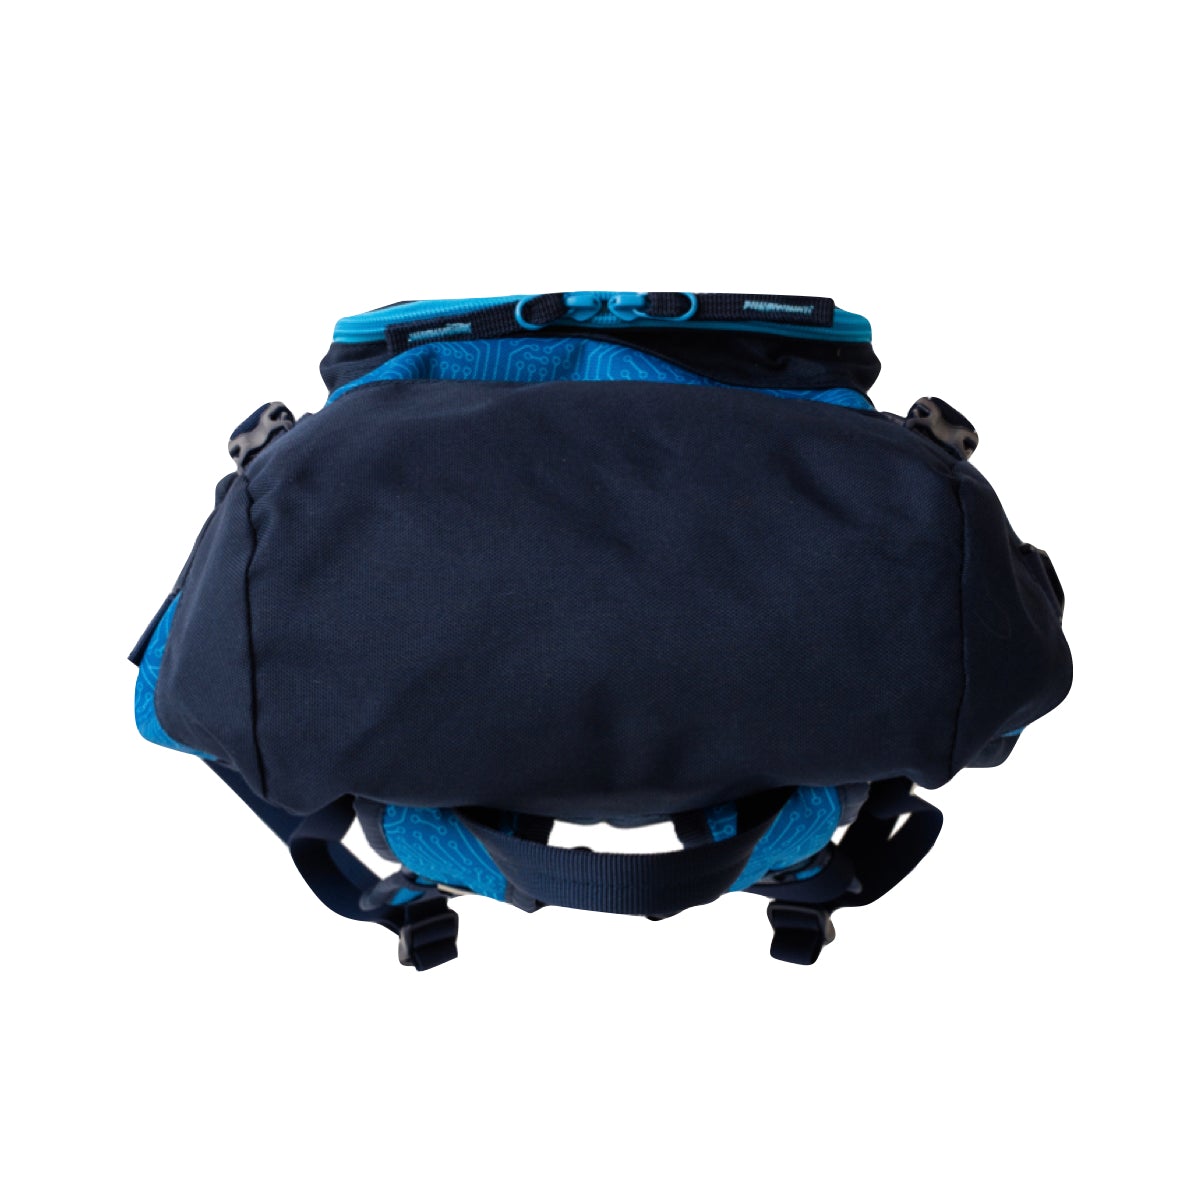 The Adventurer Backpack